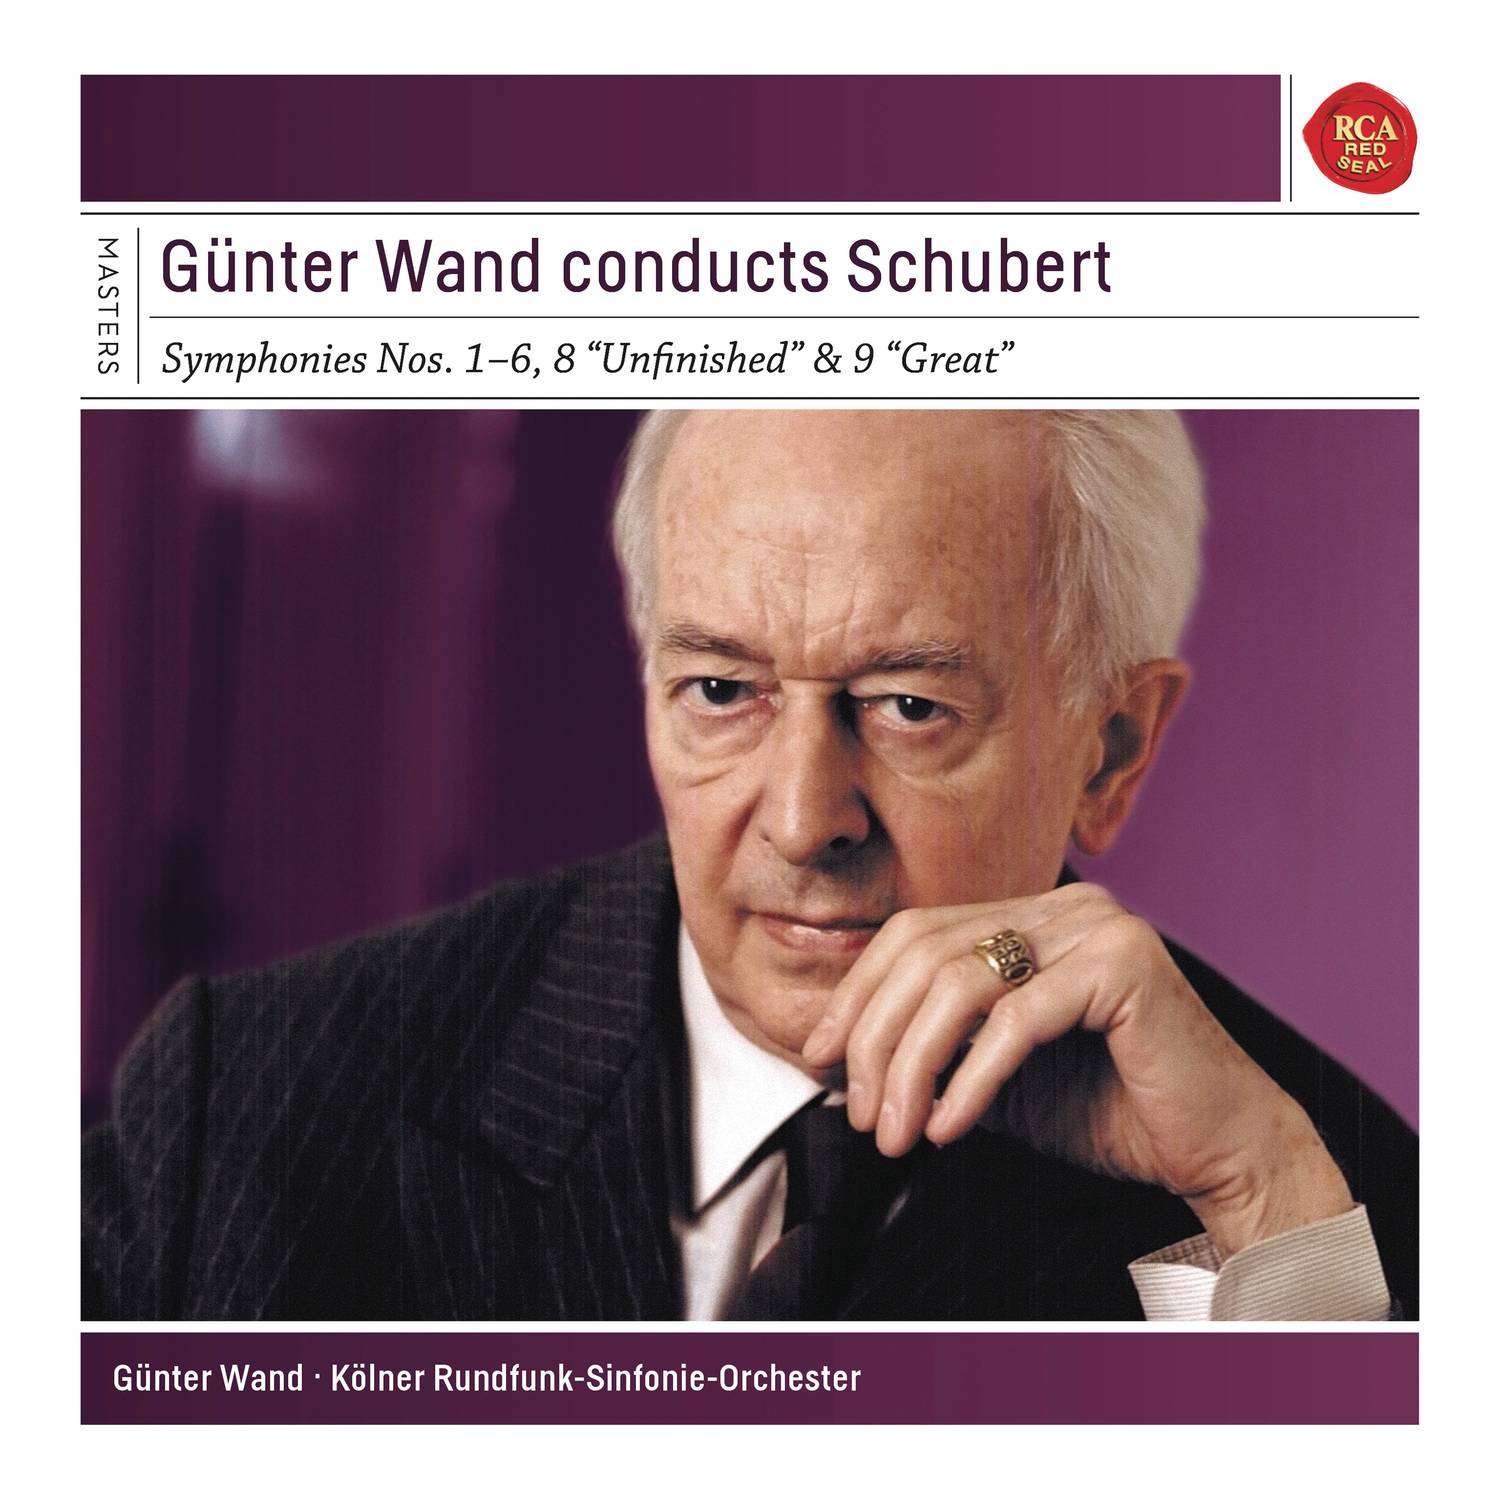 Gü nter Wand Conducts Schubert